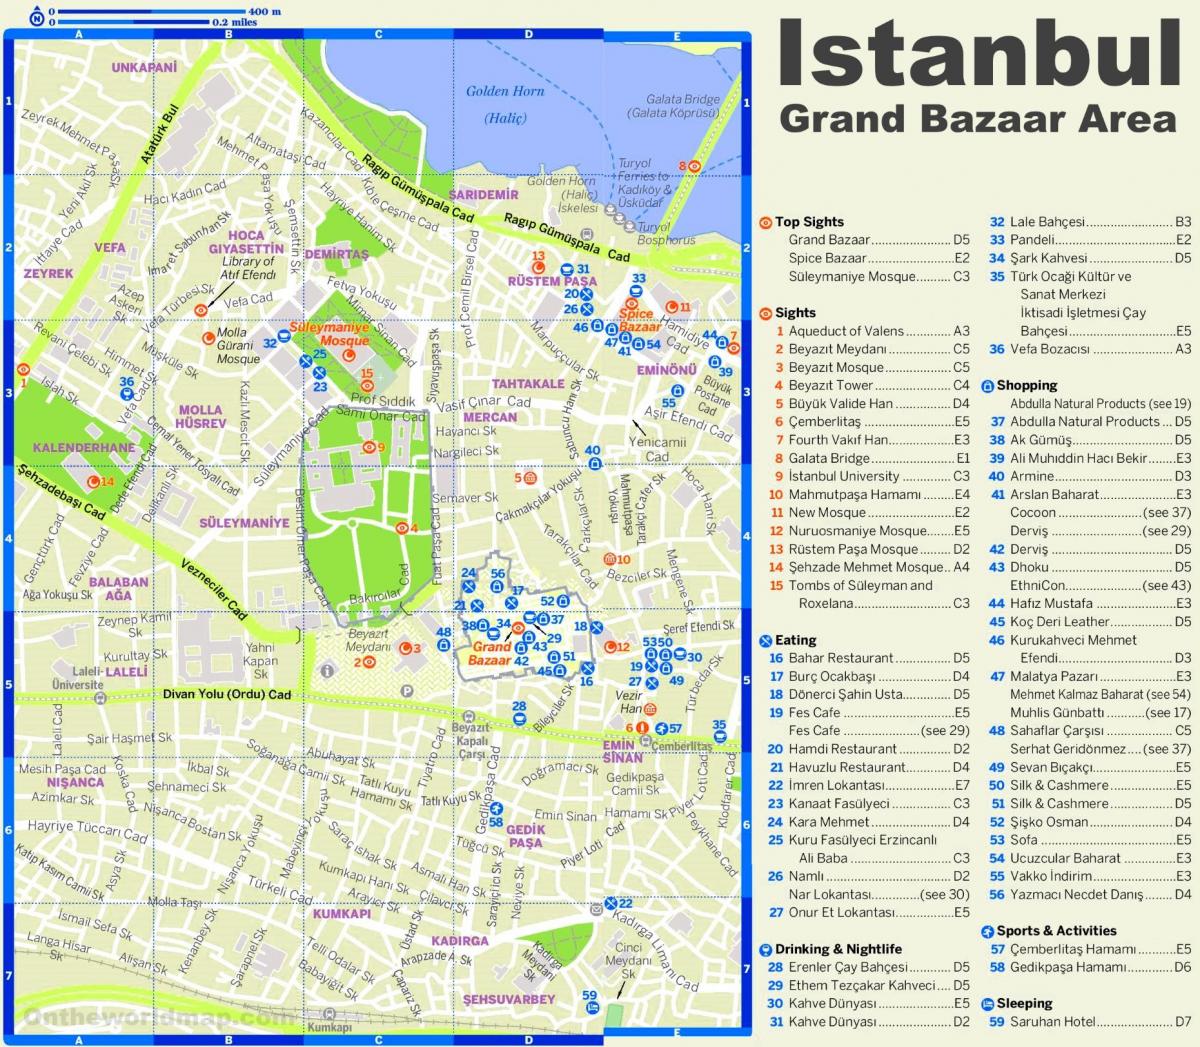 bazar de istambul mapa